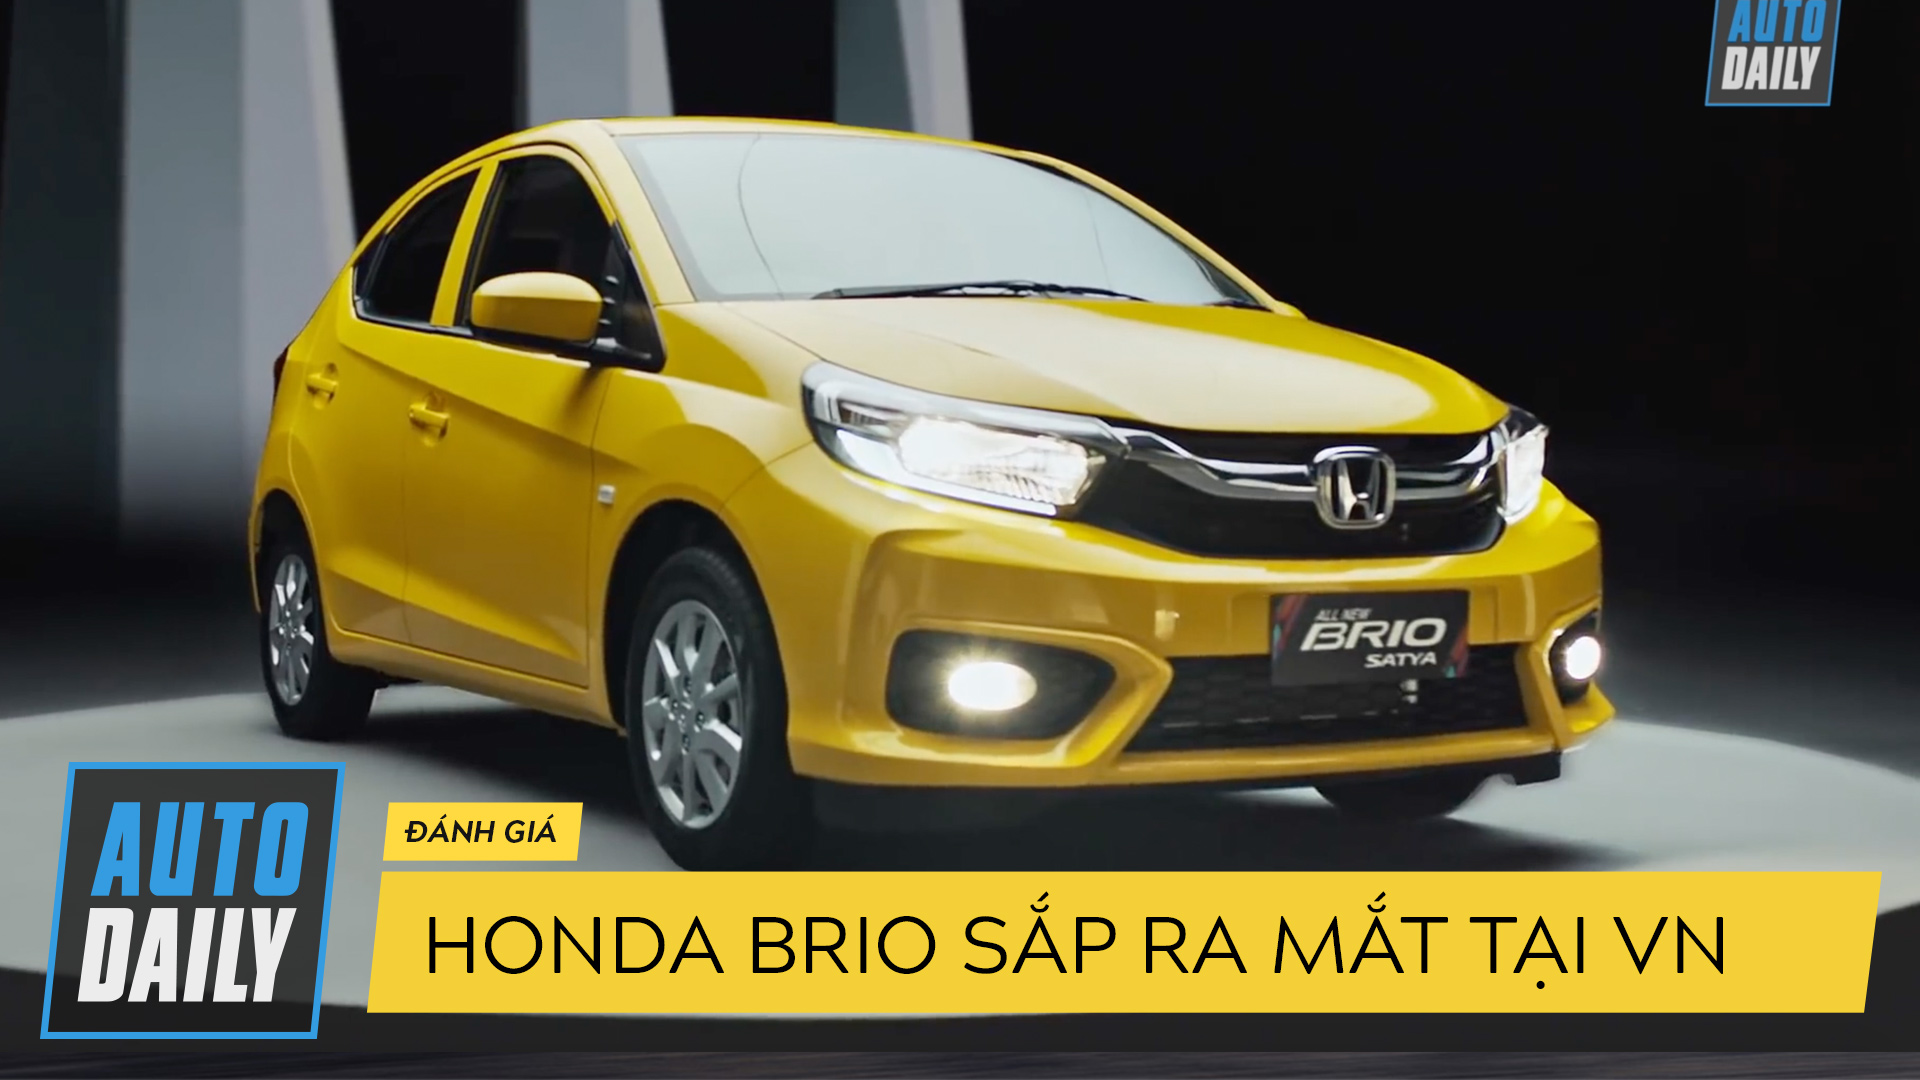 Honda Brio sắp ra mắt tại Việt Nam: "Kẻ đến sau" có đáng gờm?